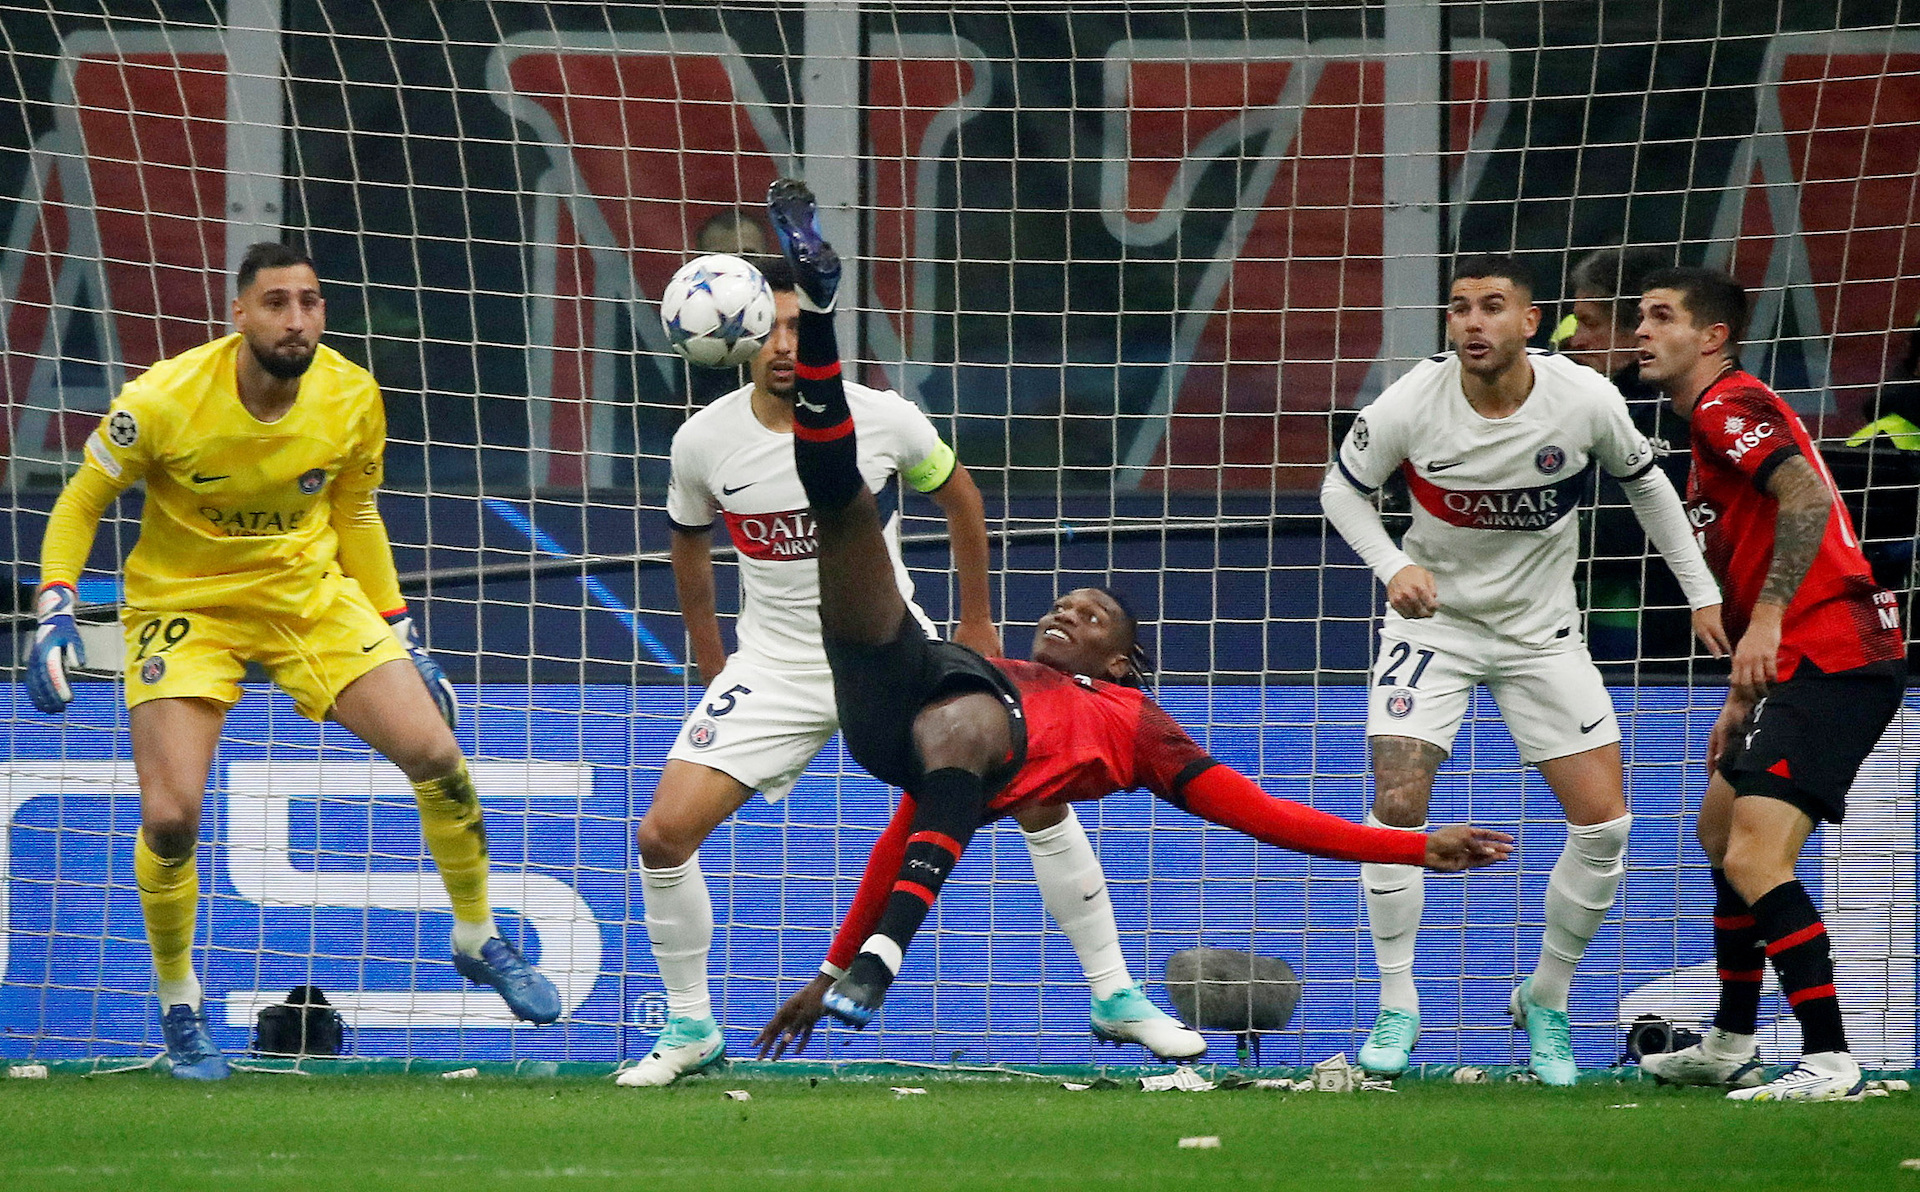 AC Milan seal comeback 2-1 win over Paris Saint-Germain at San Siro